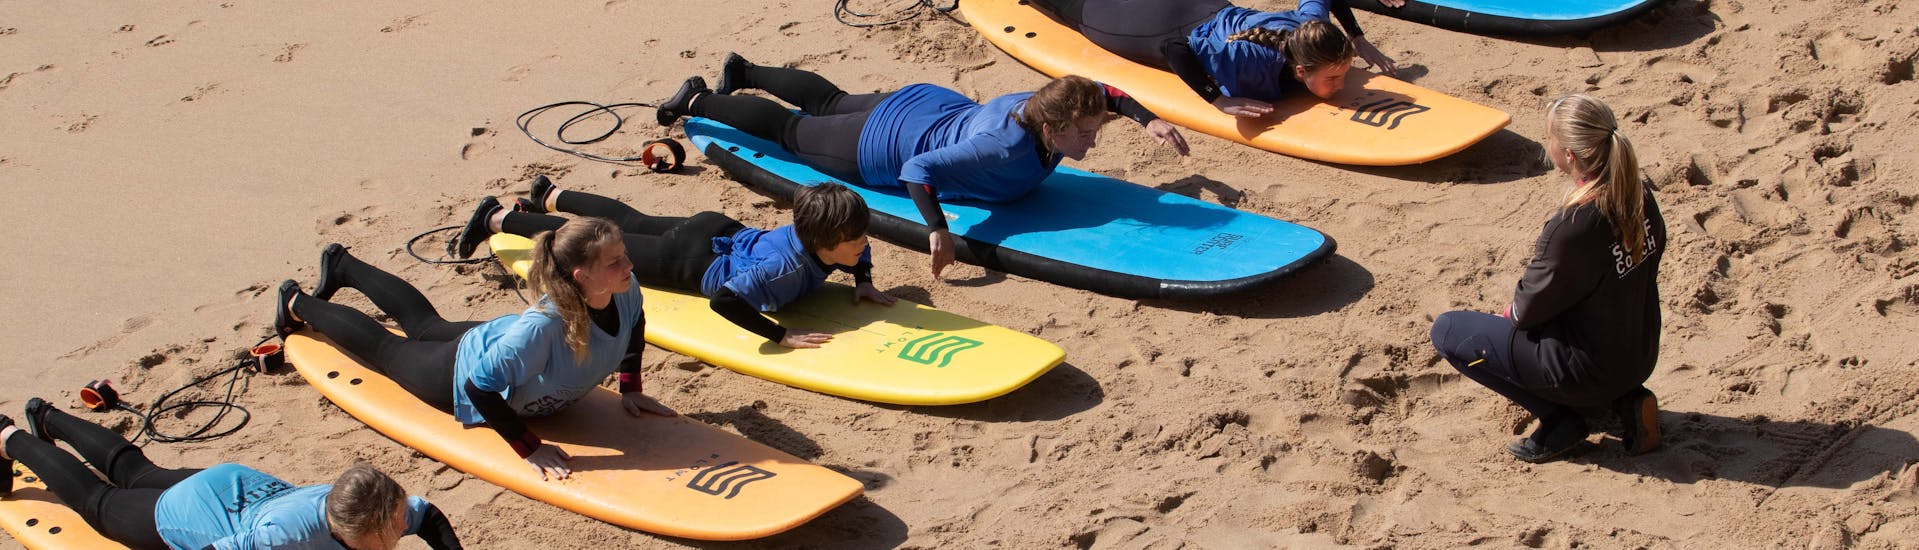 Een groep mensen leert peddelen tijdens een surfles in Ericeira op Praia do Matadouro met Boardculture Surf Center.